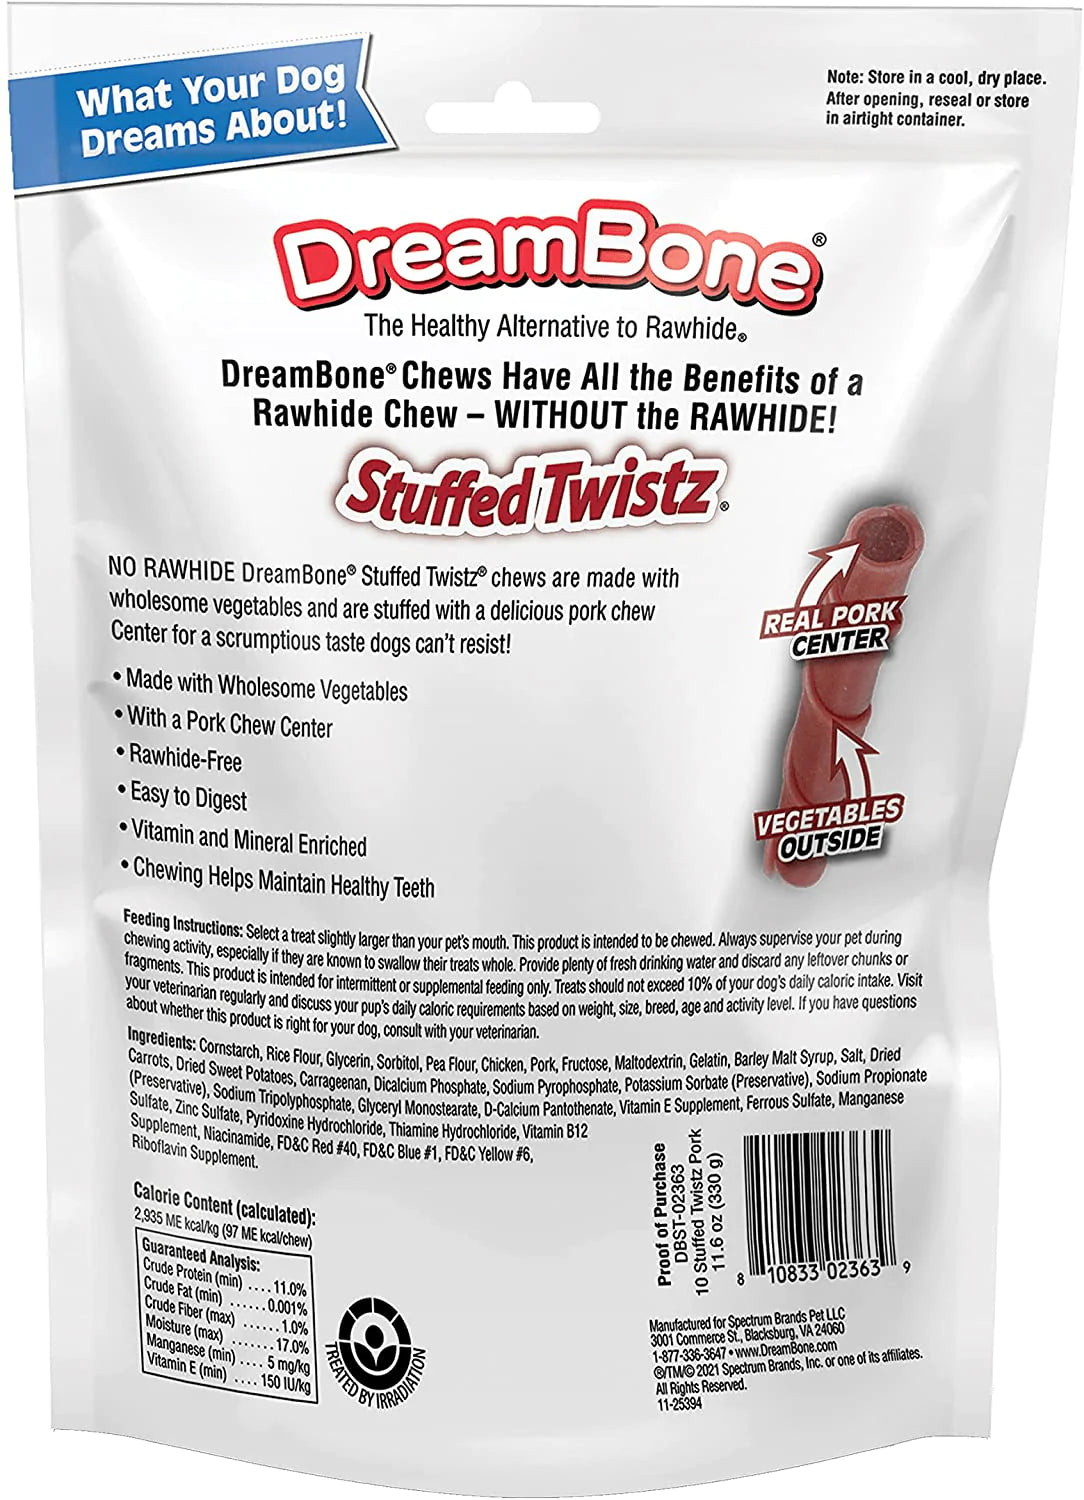 Dreambone Stuffed Twistz 10 Count, Rawhide-Free Chews